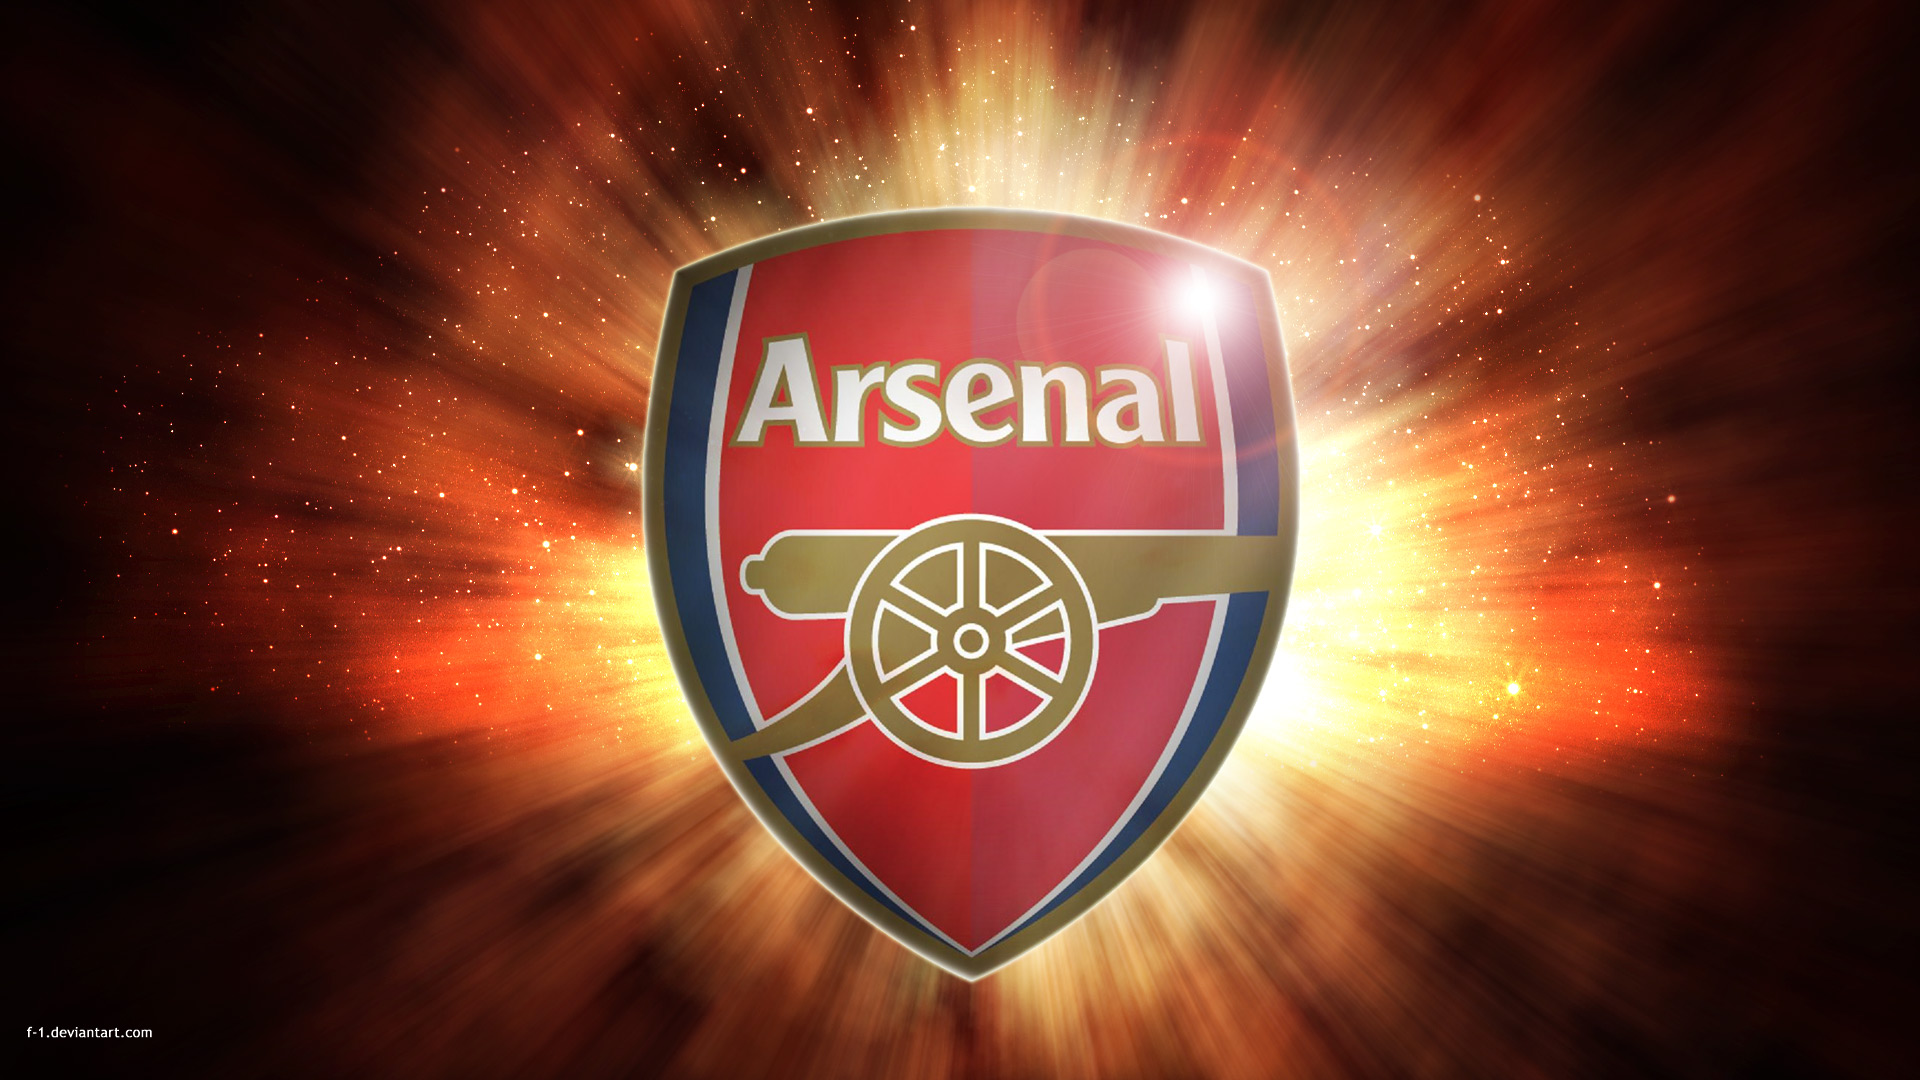 Arsenal Fc Logo Wallpaper For Windows